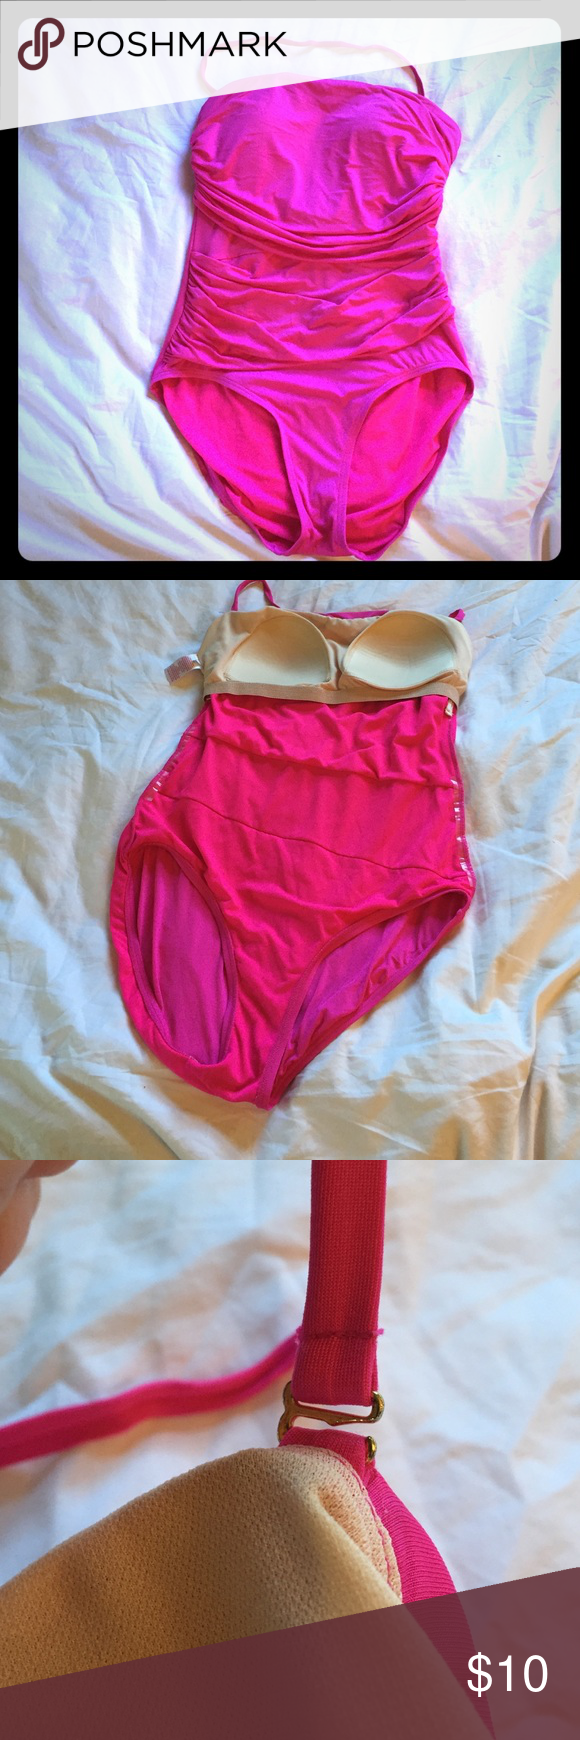 Hot pink bikini 36b l